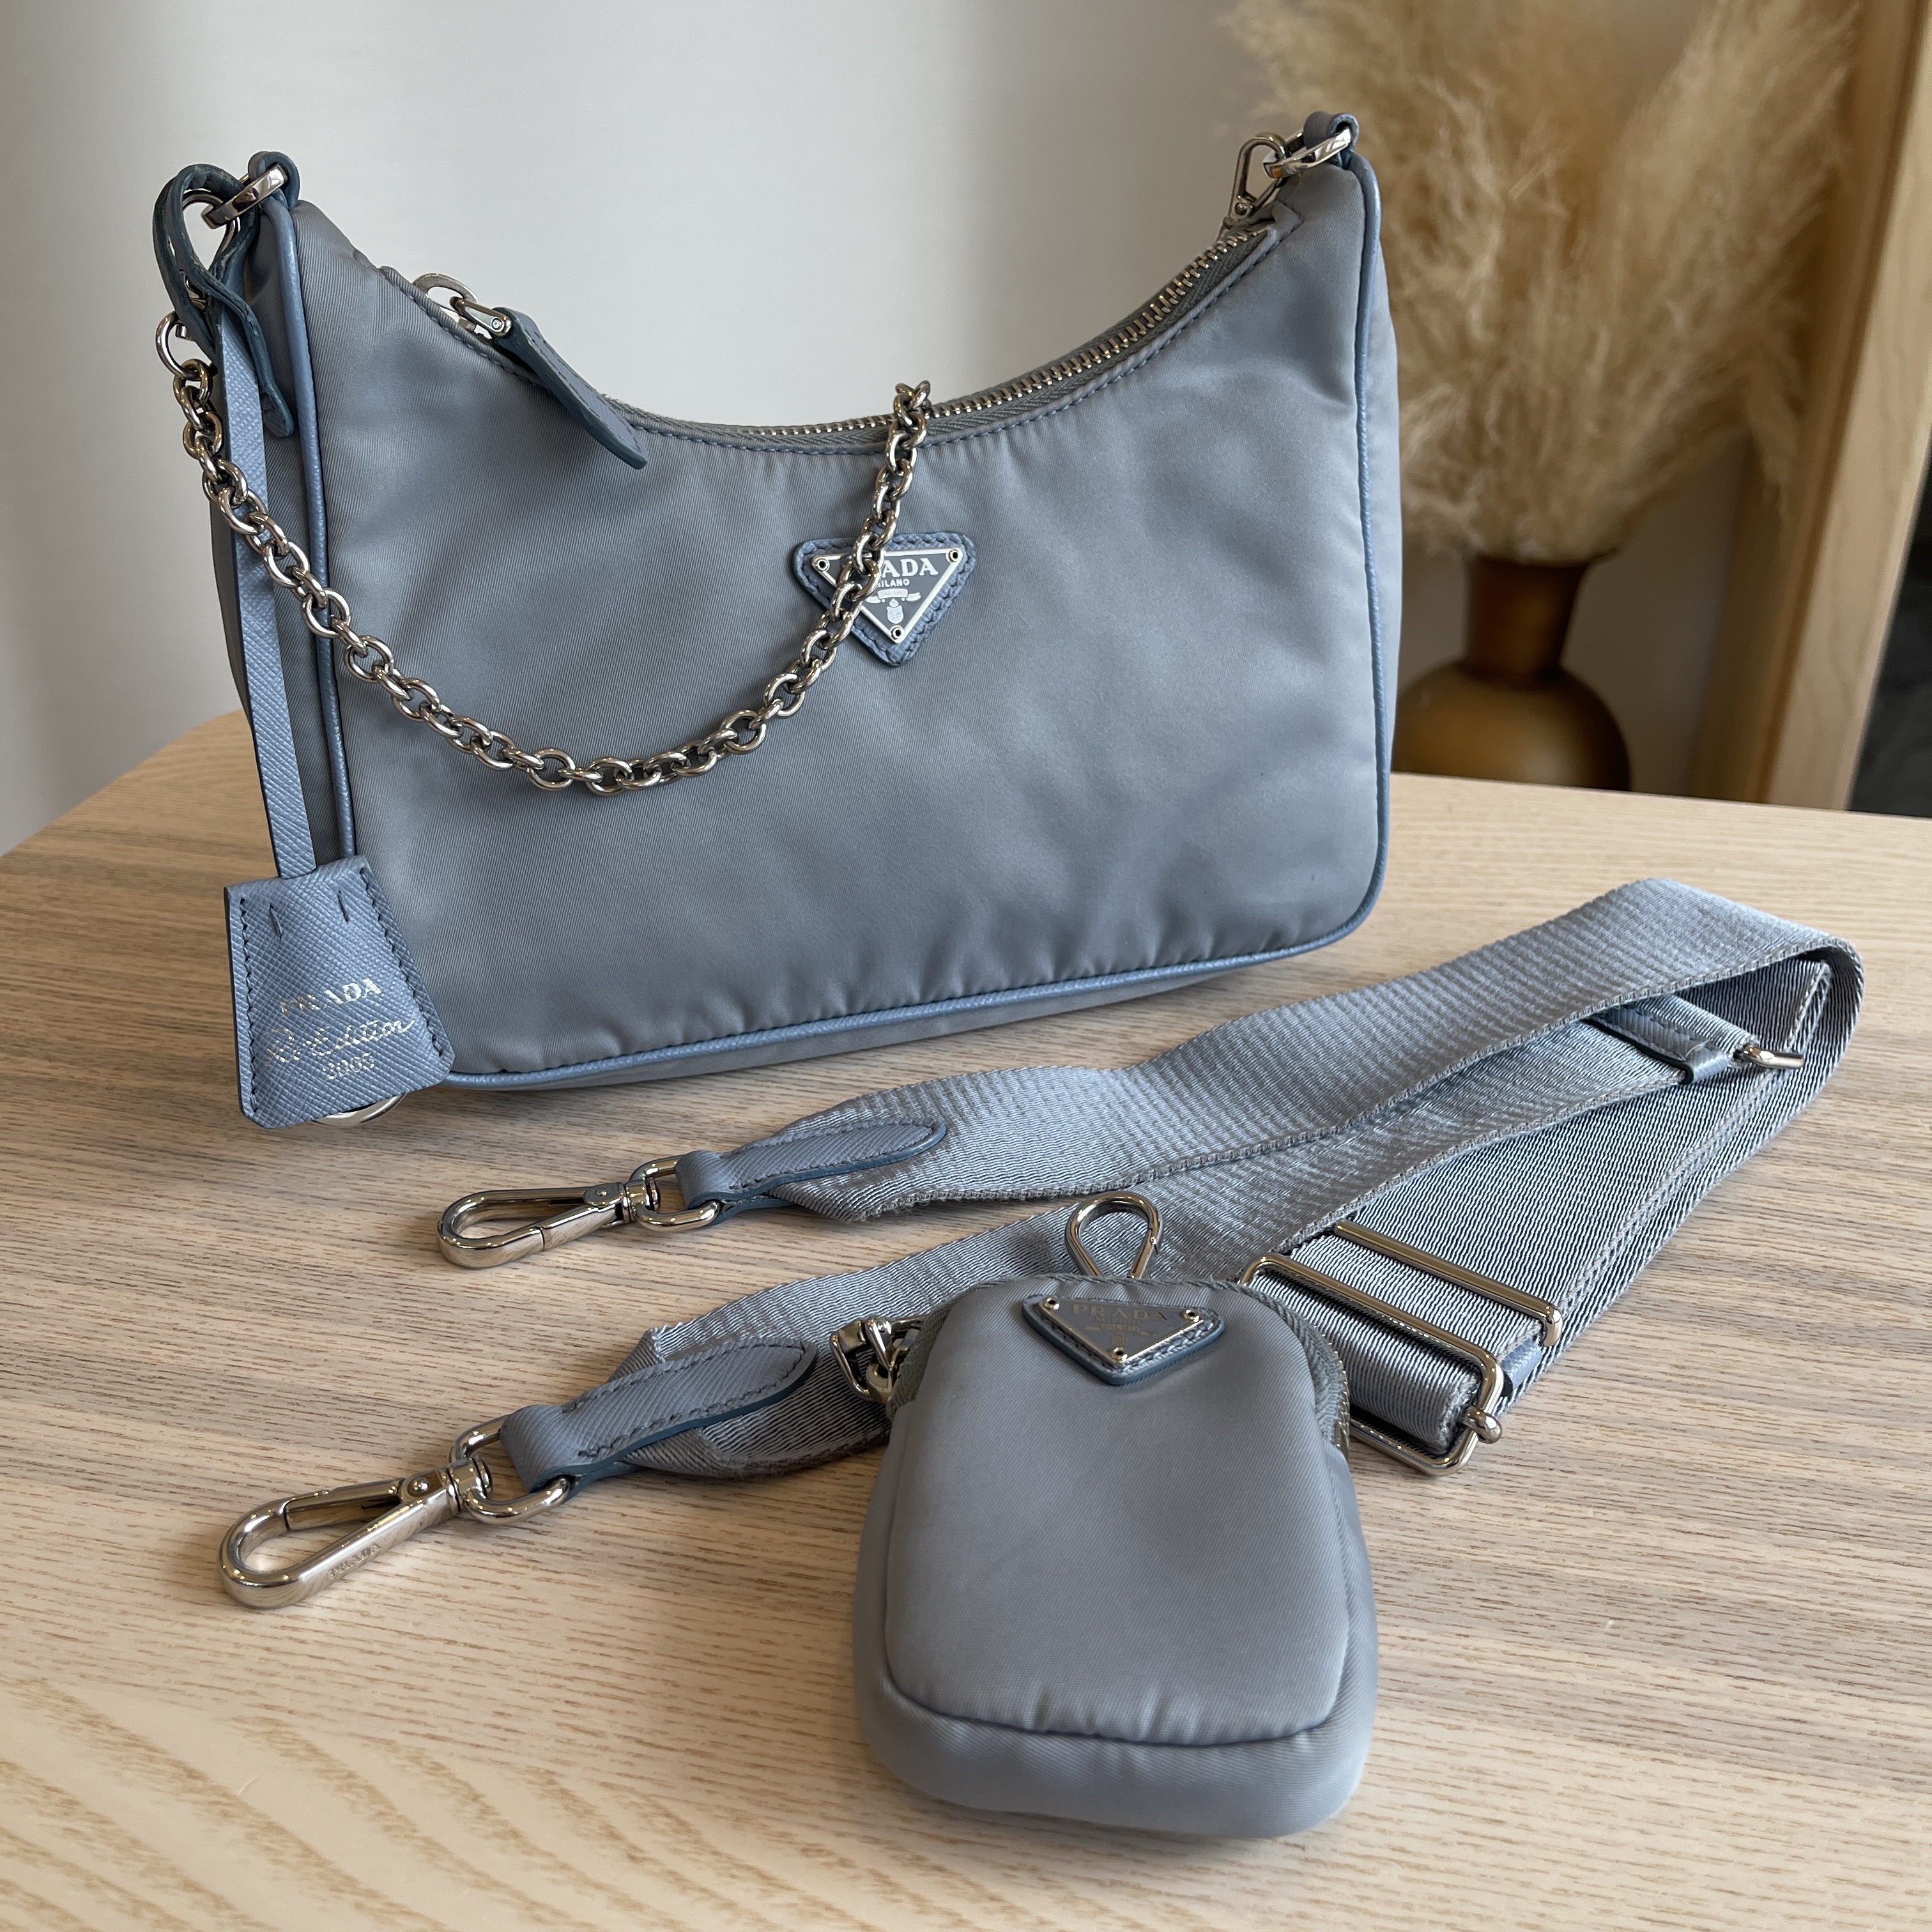 Prada Nylon Re-Edition 2005 Shoulder Bag Blue